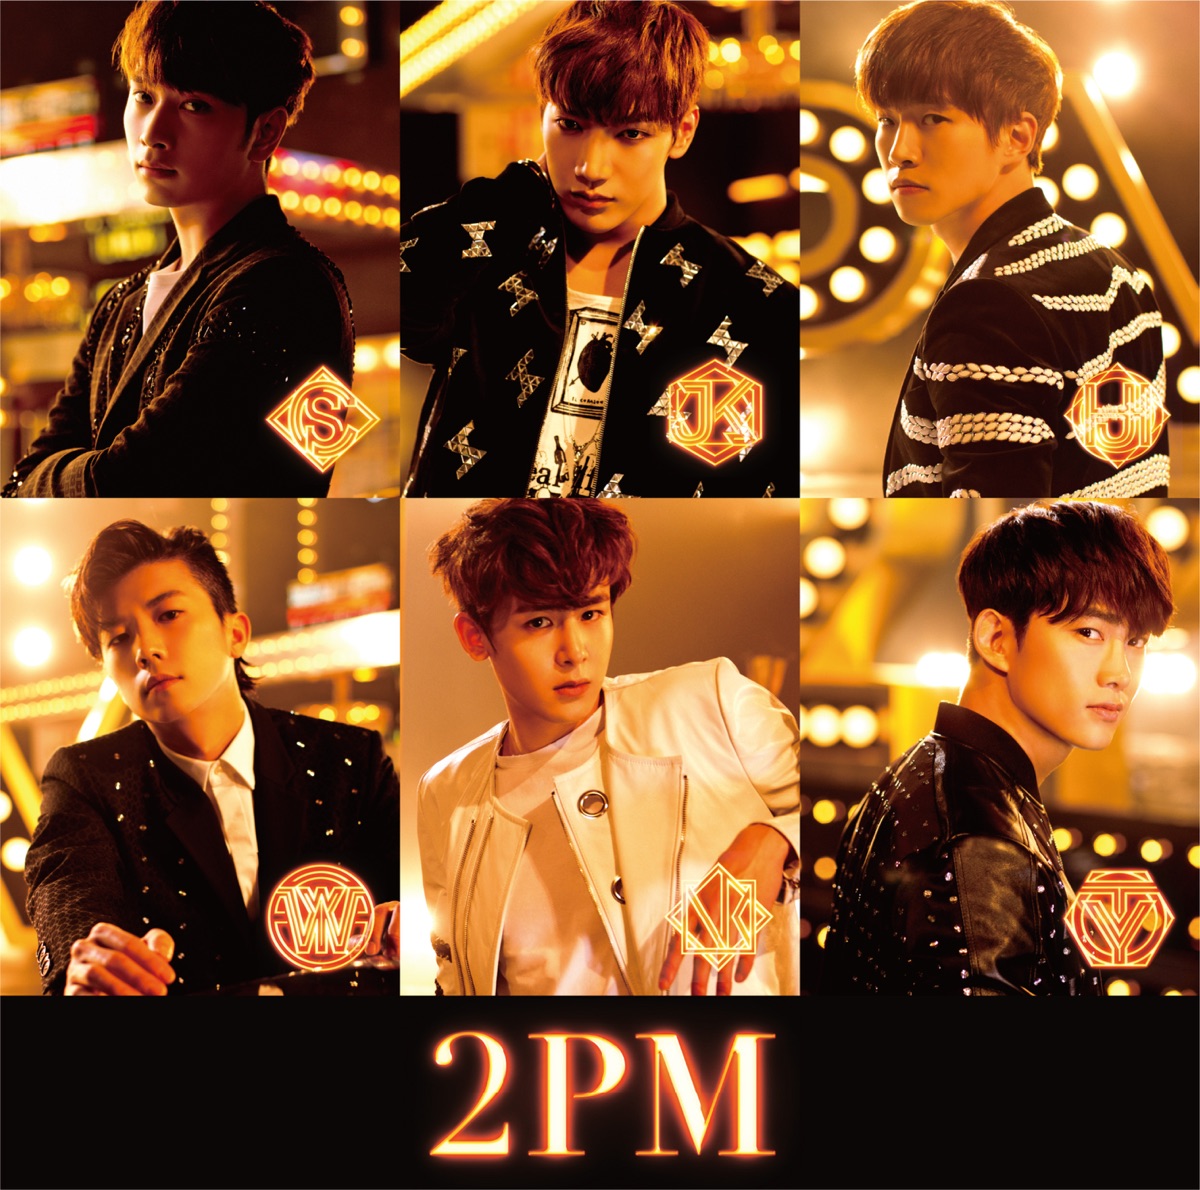 01:59PM - 2PMのアルバム - Apple Music